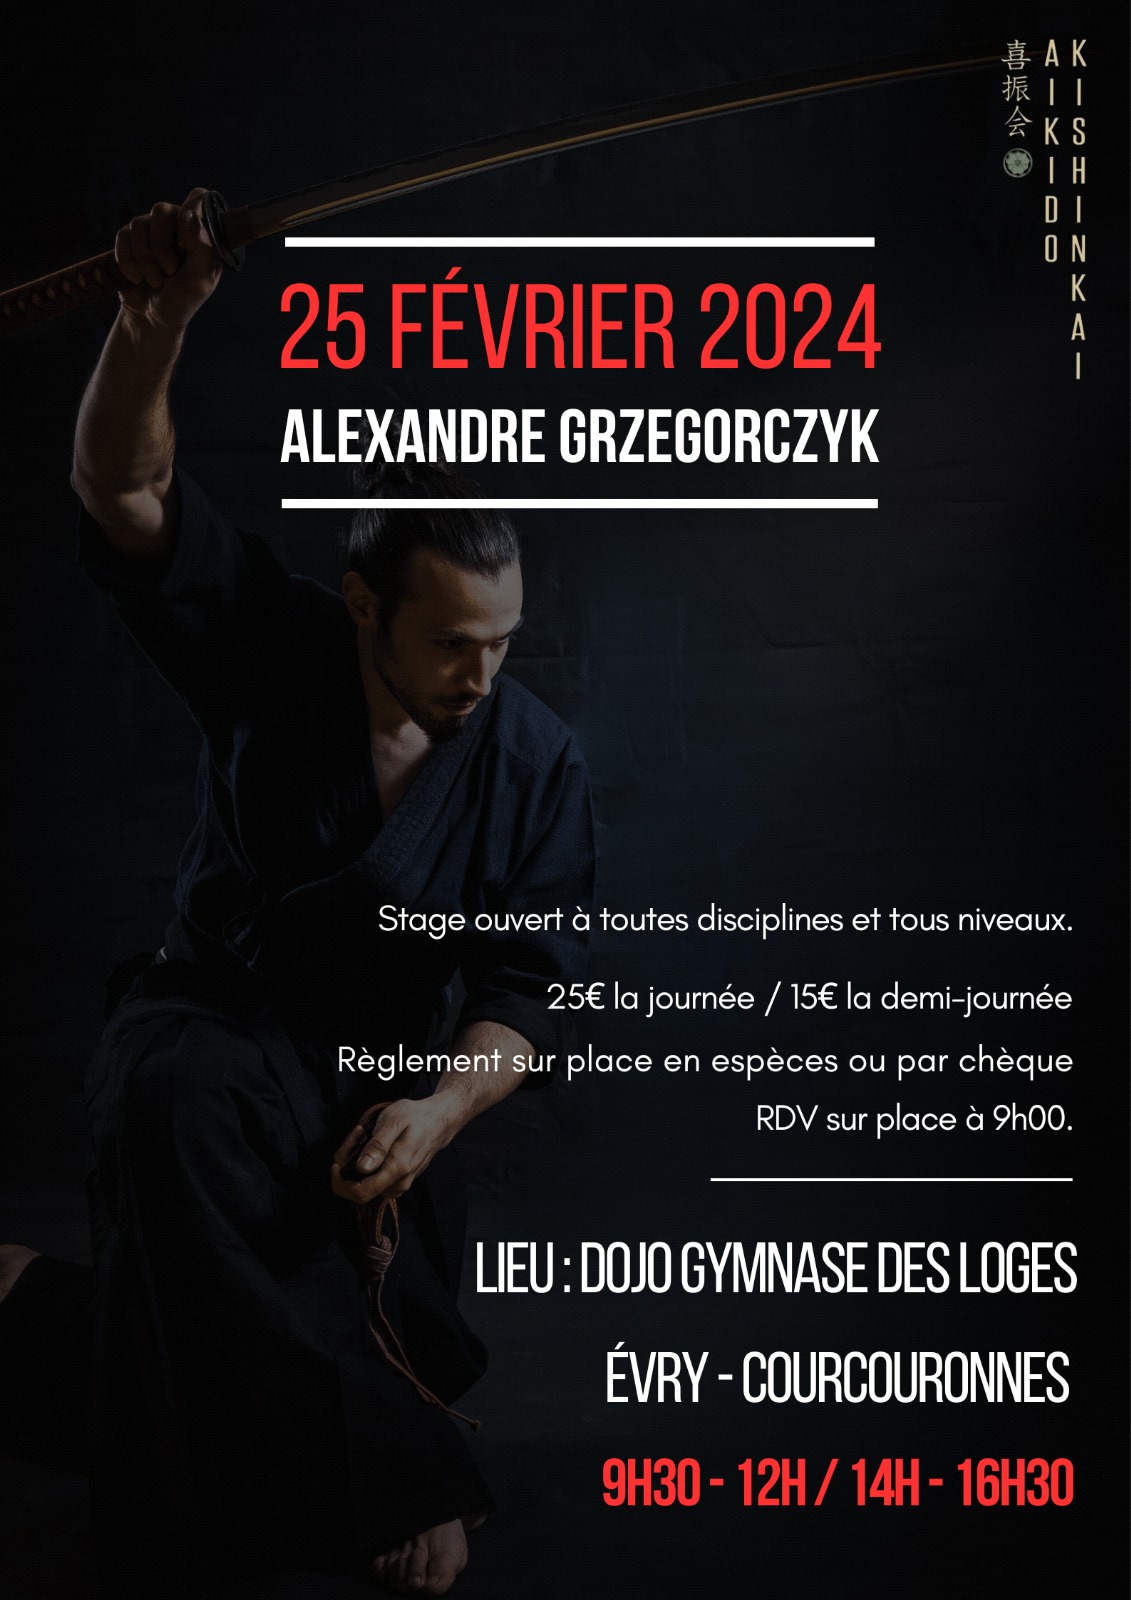 Alexandre Grzegorczyk à Evry-Courcouronnes, le dimanche 25 février 2024